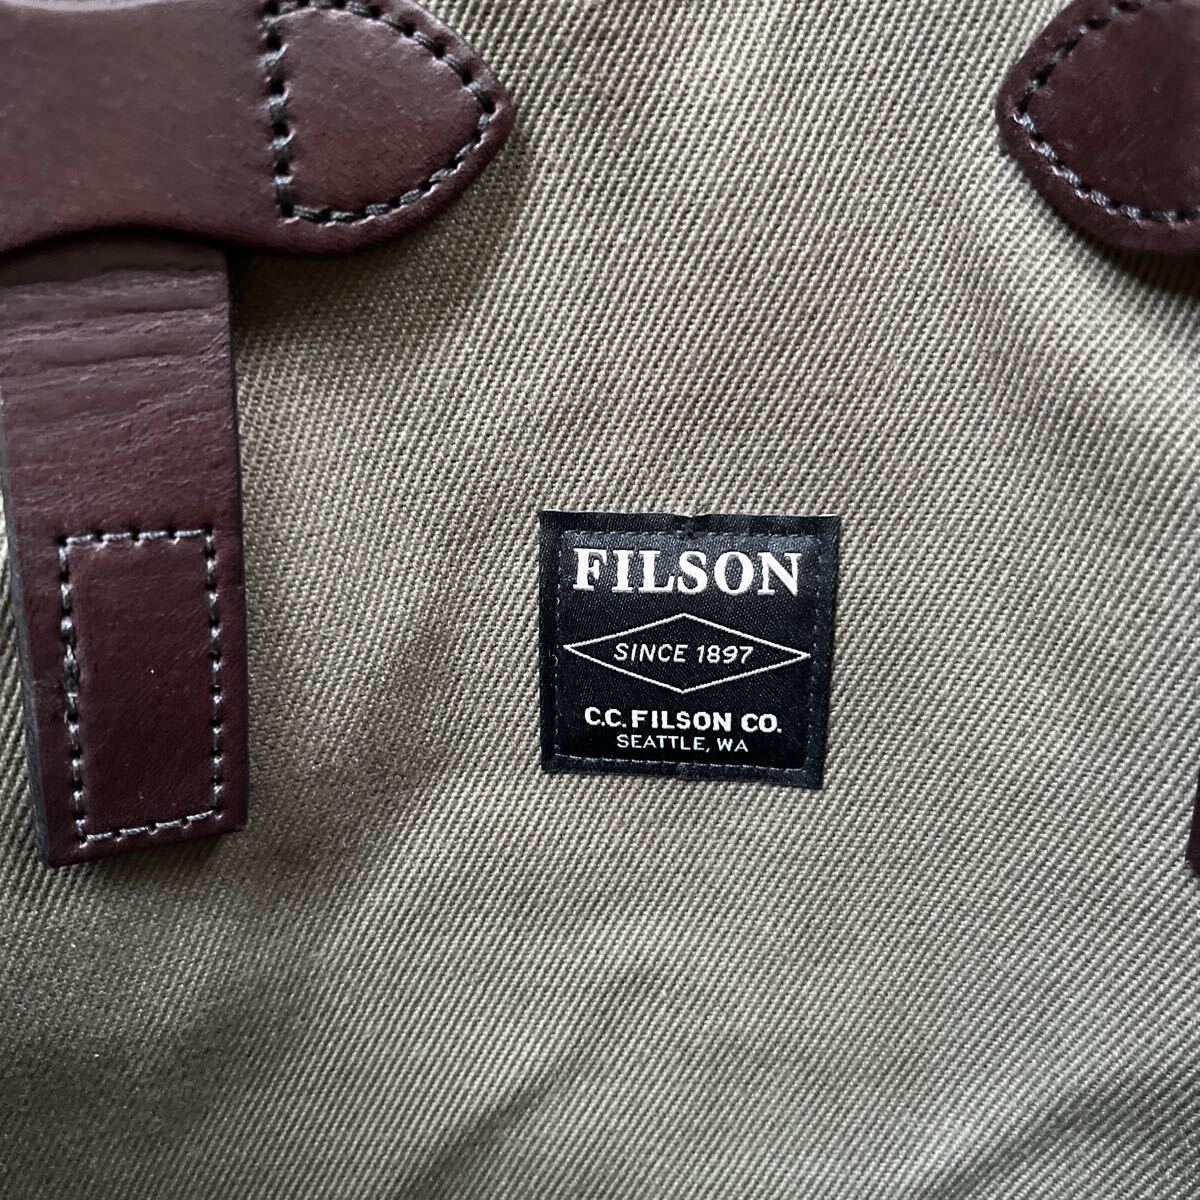 FILSON tote bag Filson canvas rare size 